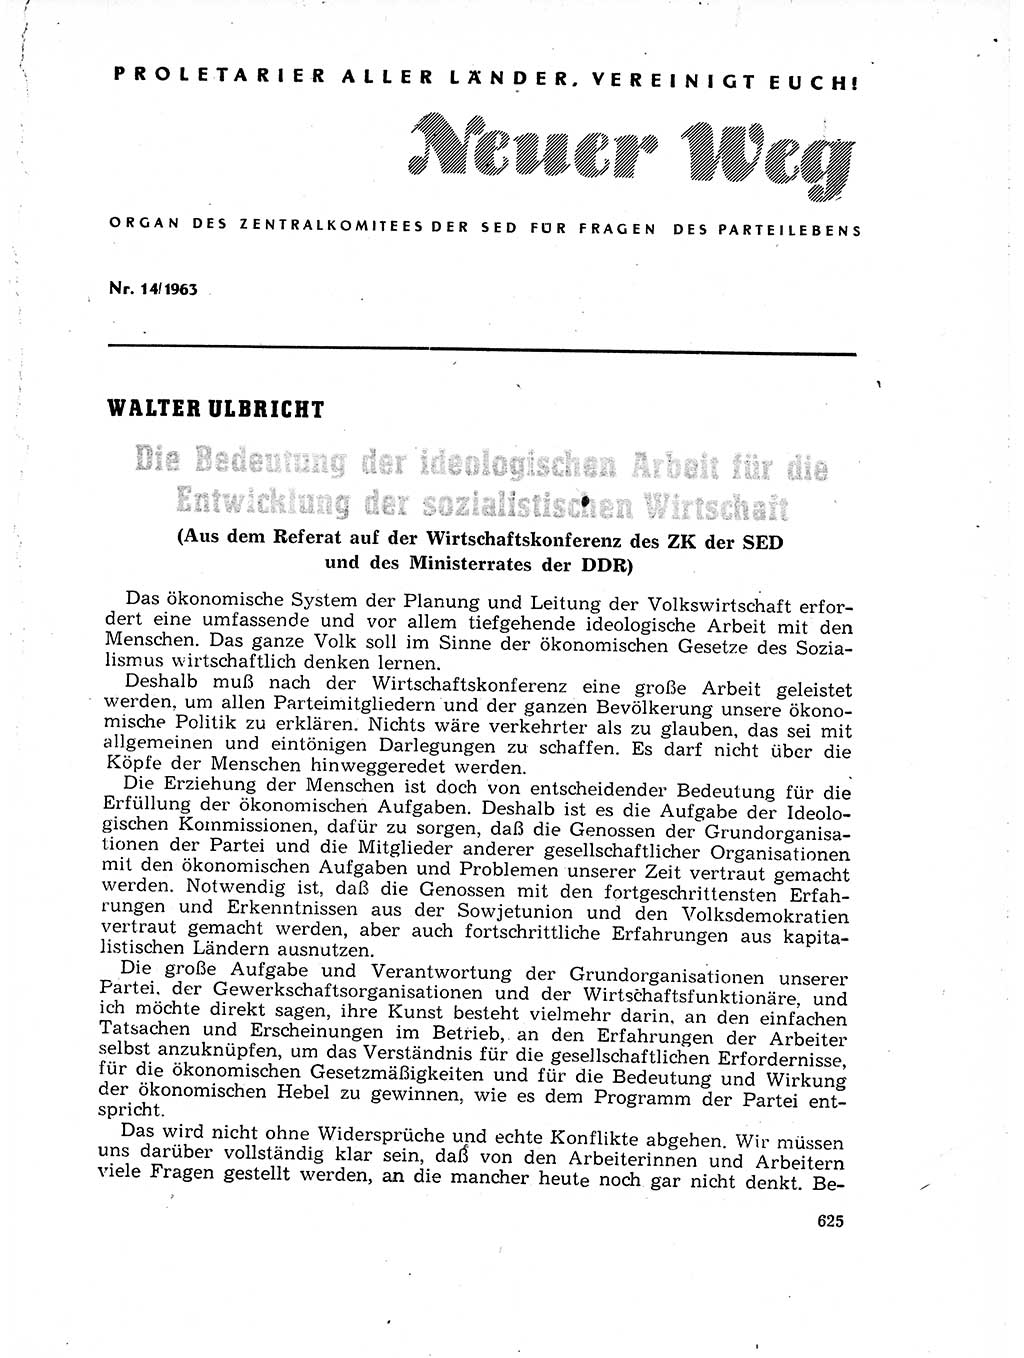 Neuer Weg (NW), Organ des Zentralkomitees (ZK) der SED (Sozialistische Einheitspartei Deutschlands) für Fragen des Parteilebens, 18. Jahrgang [Deutsche Demokratische Republik (DDR)] 1963, Seite 625 (NW ZK SED DDR 1963, S. 625)